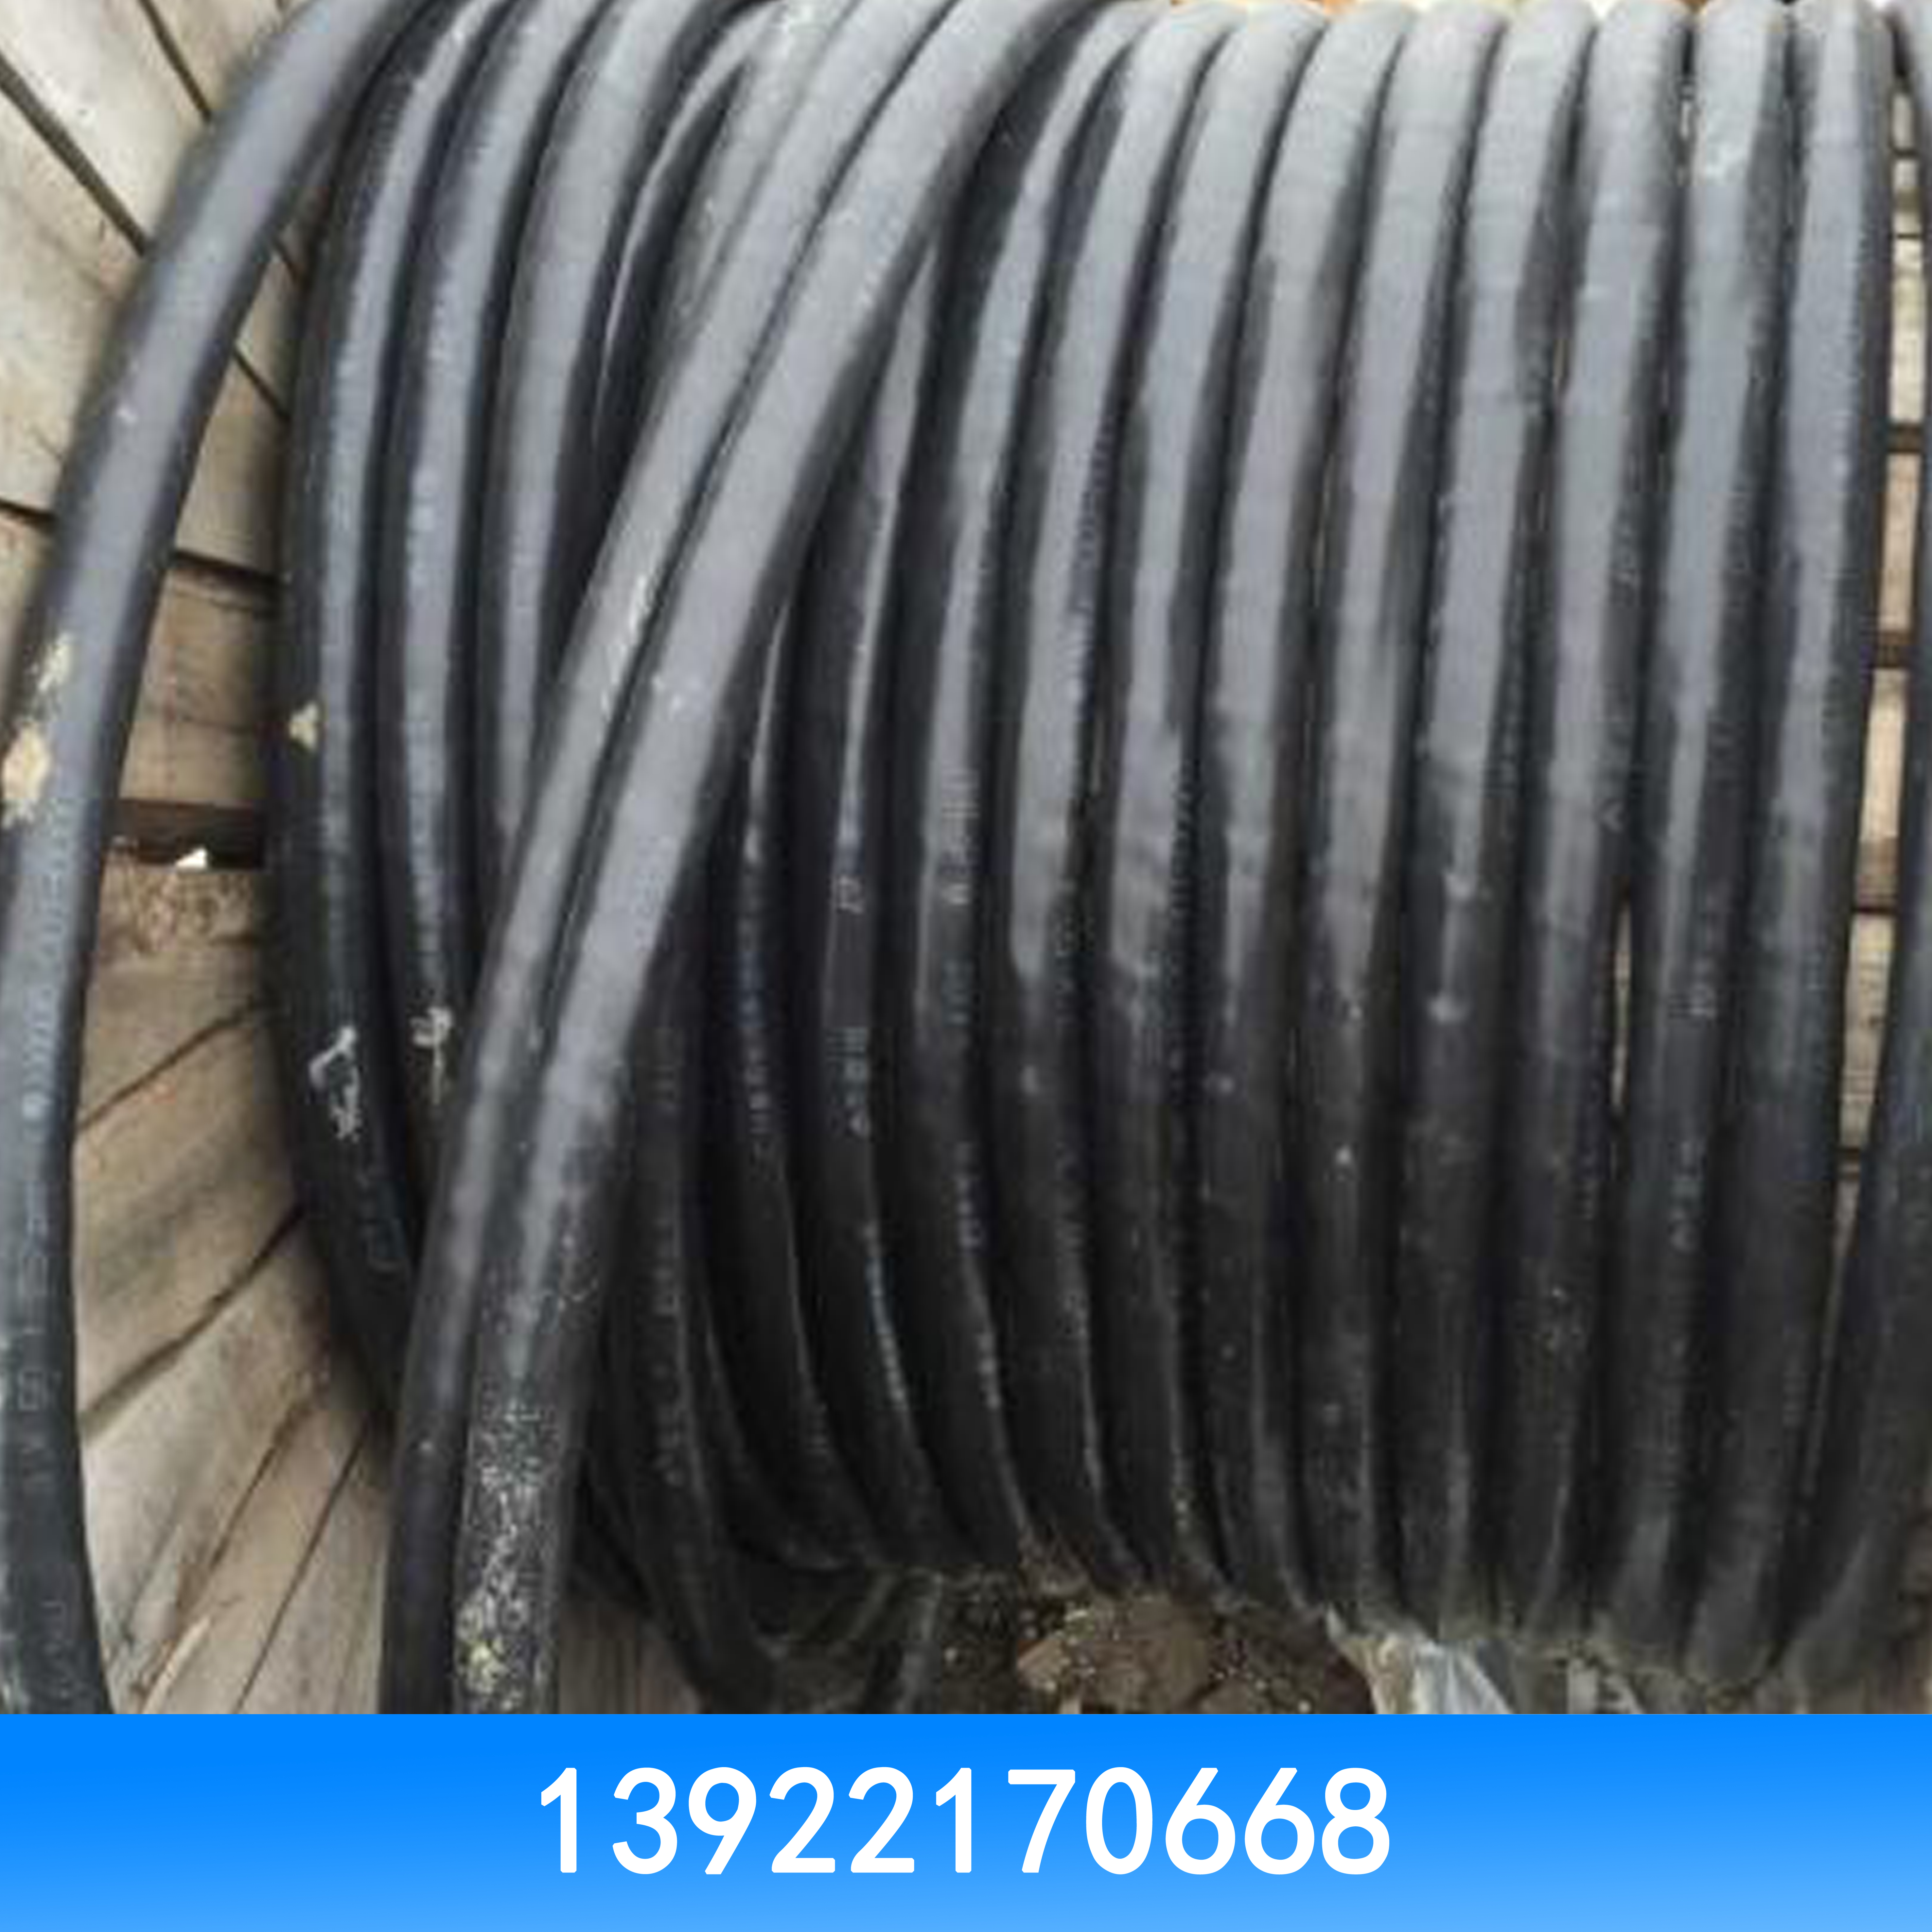 电线电缆回收电线电缆回收 电线电缆回收价格 电线电缆回收批发 电线电缆回收厂家